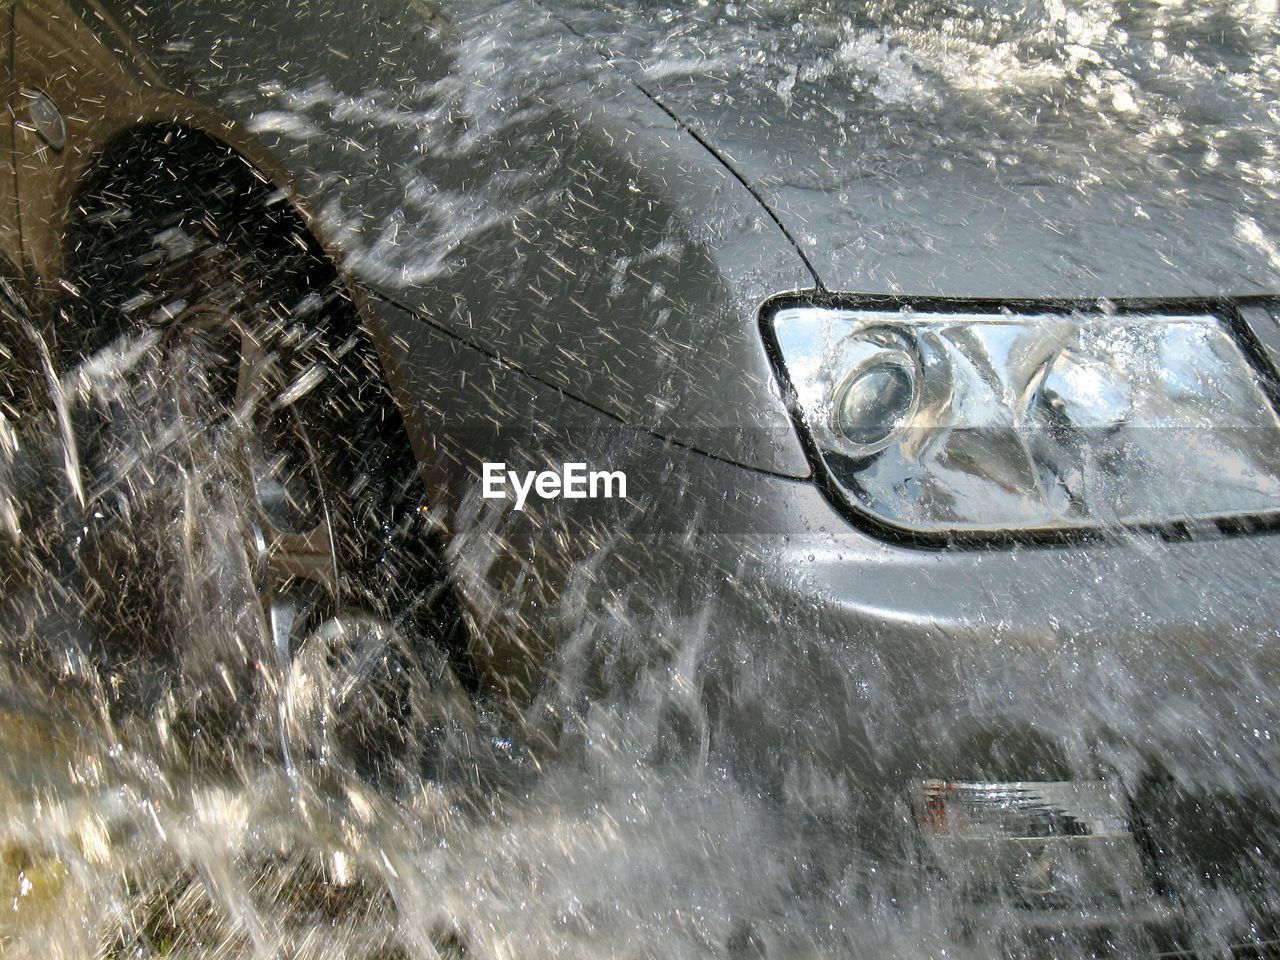 Water splashing on car